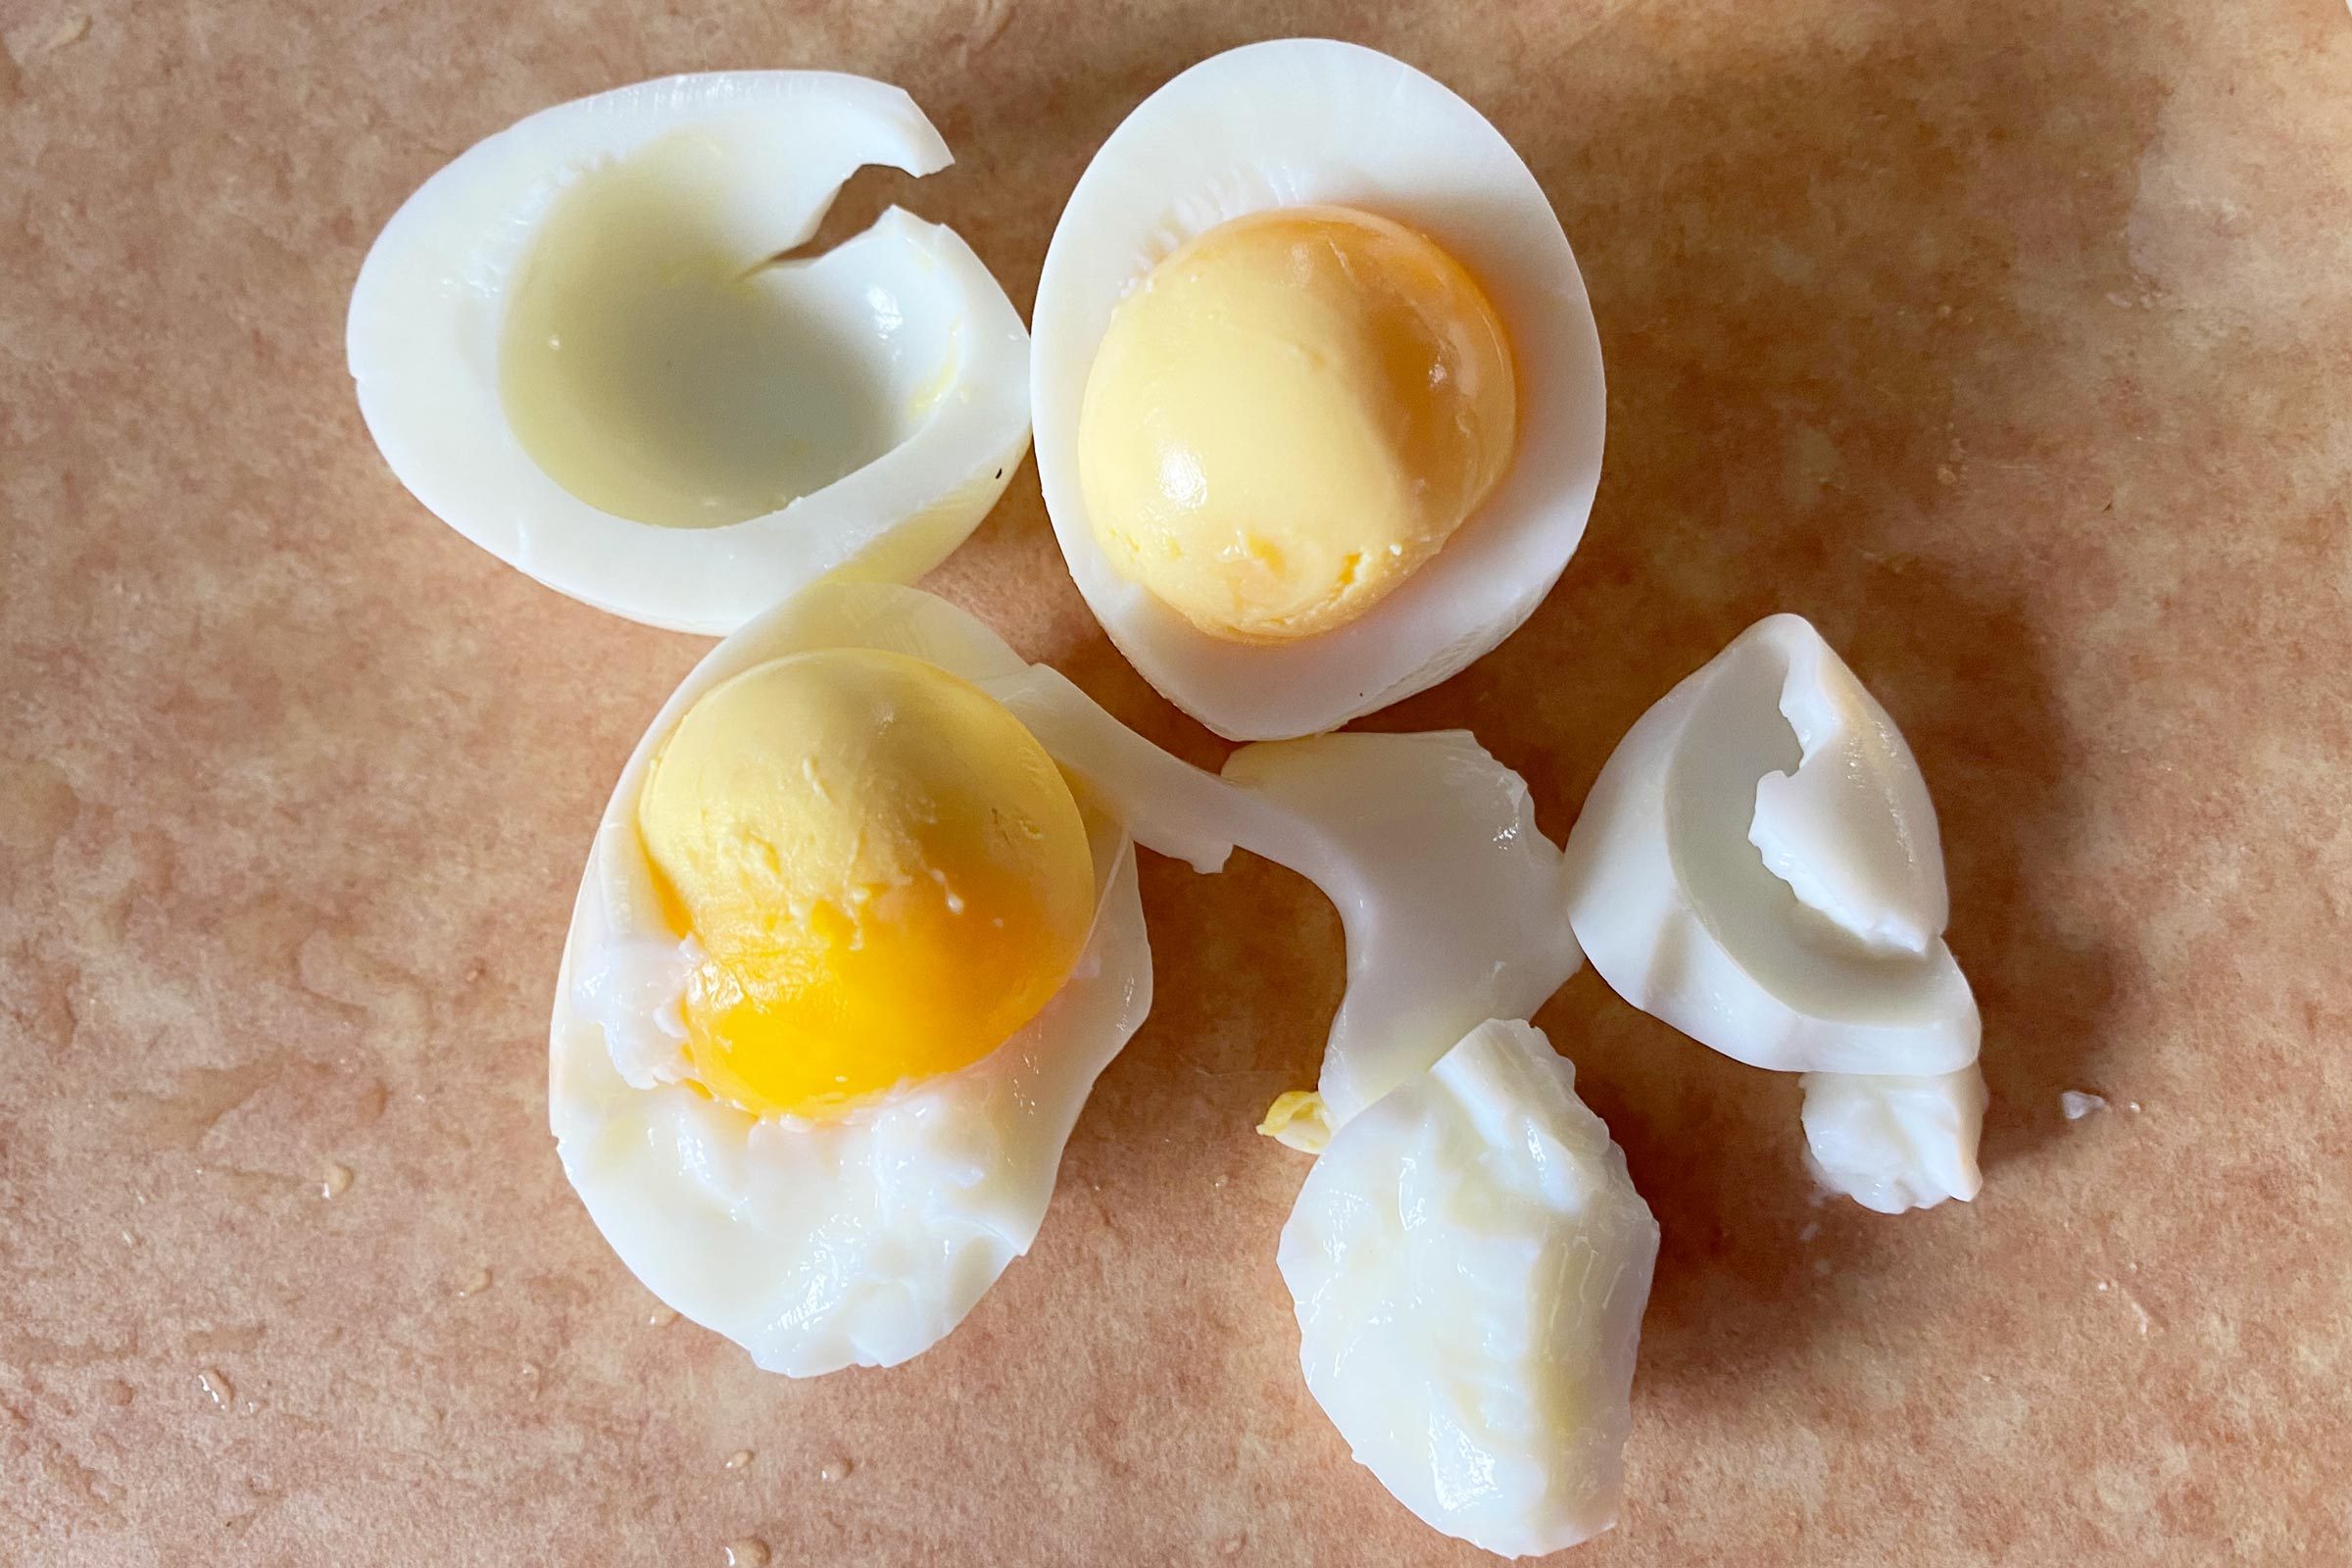 https://www.rd.com/wp-content/uploads/2023/05/original-hard-boiled-eggs-Allison-Robicelli-JVedit.jpg?fit=680%2C454